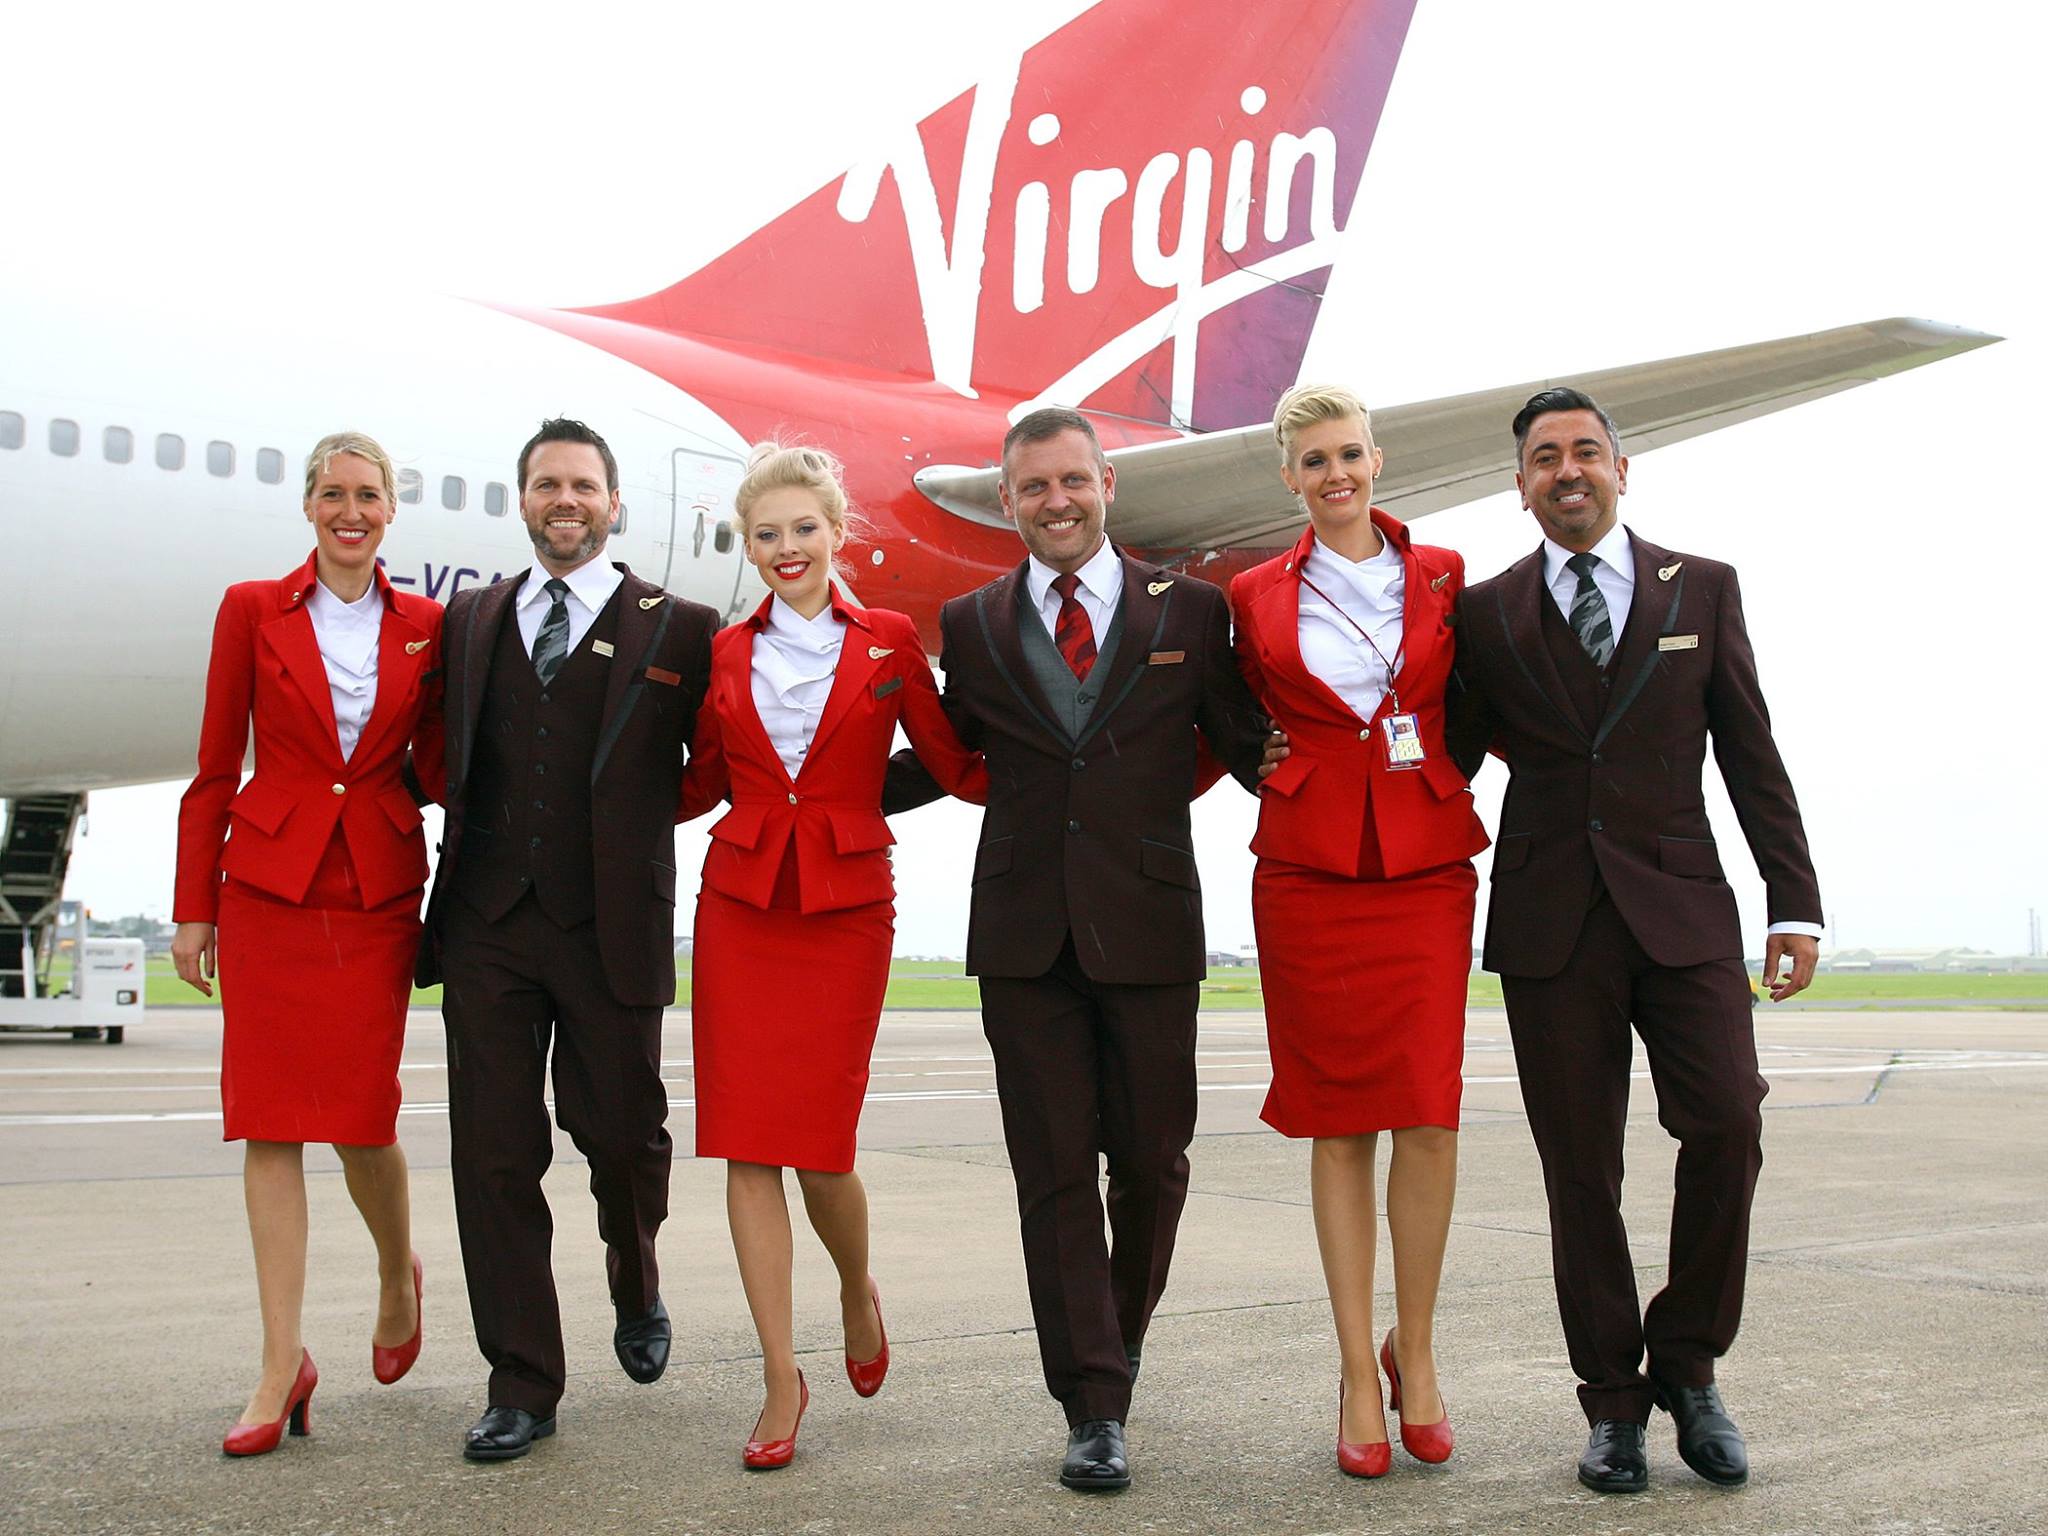 Virgin Atlantic lance une nouvelle campagne publicitaire (vidéo) 58 Air Journal